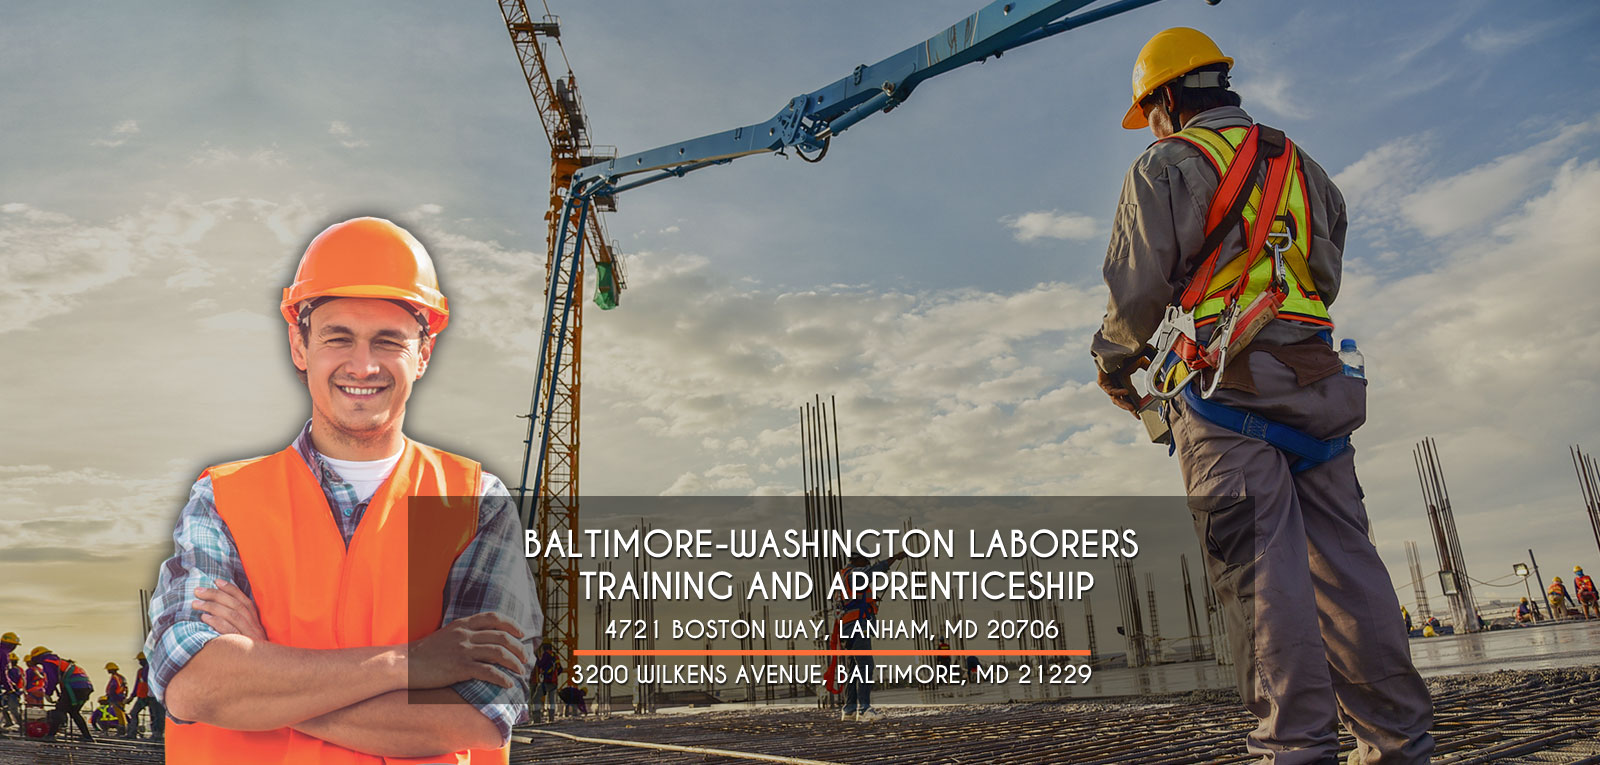 Baltimore-Washington Laborers